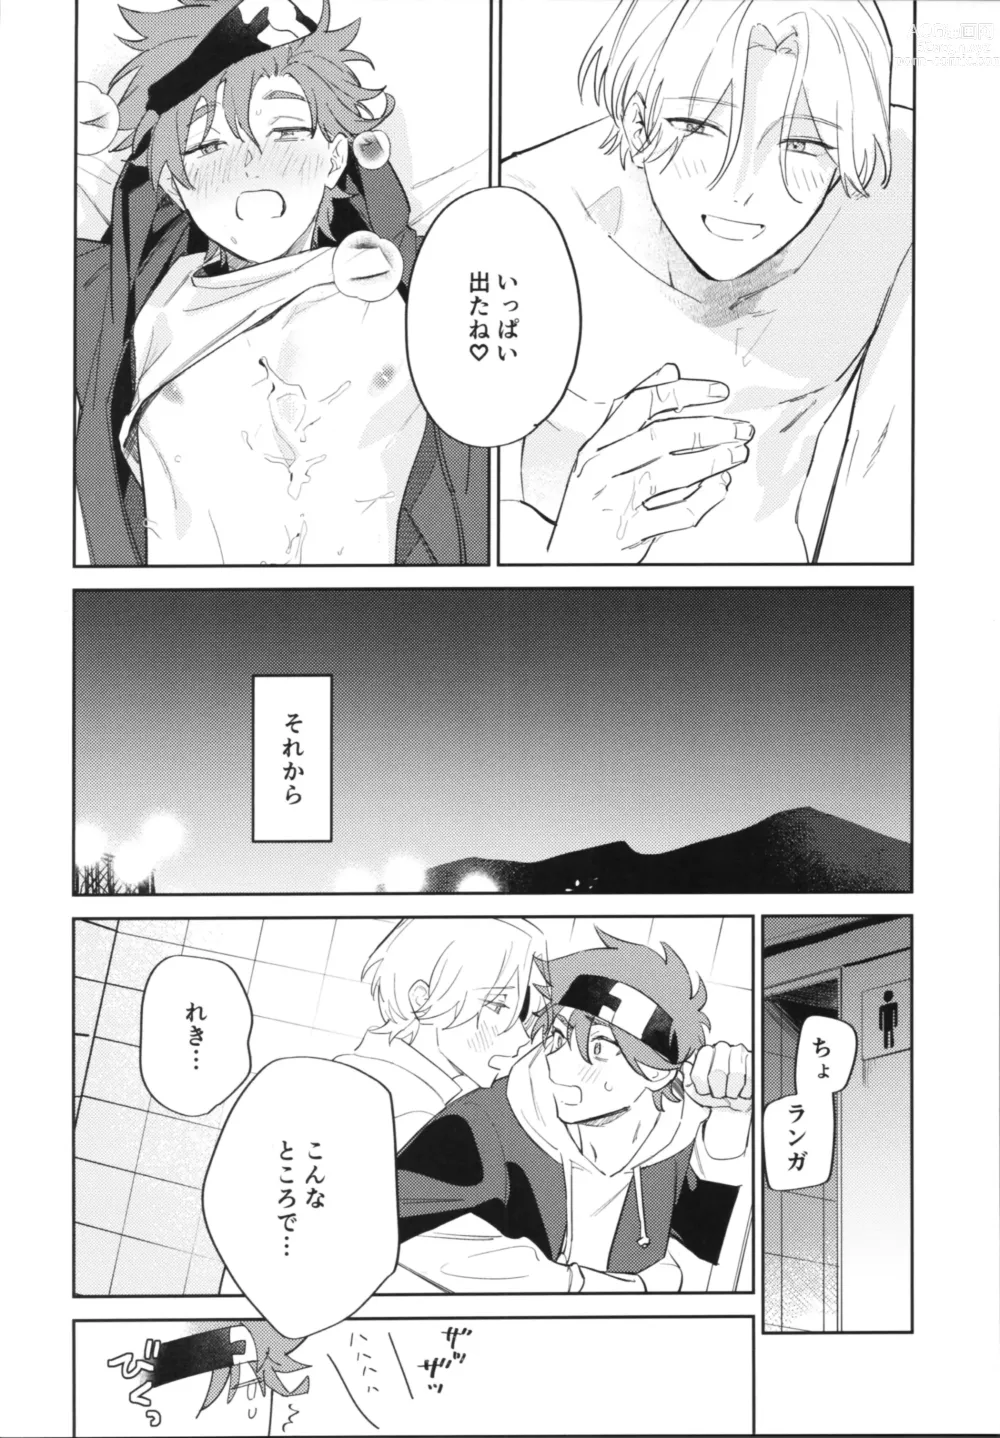 Page 11 of doujinshi Kawaīkara shōganai!